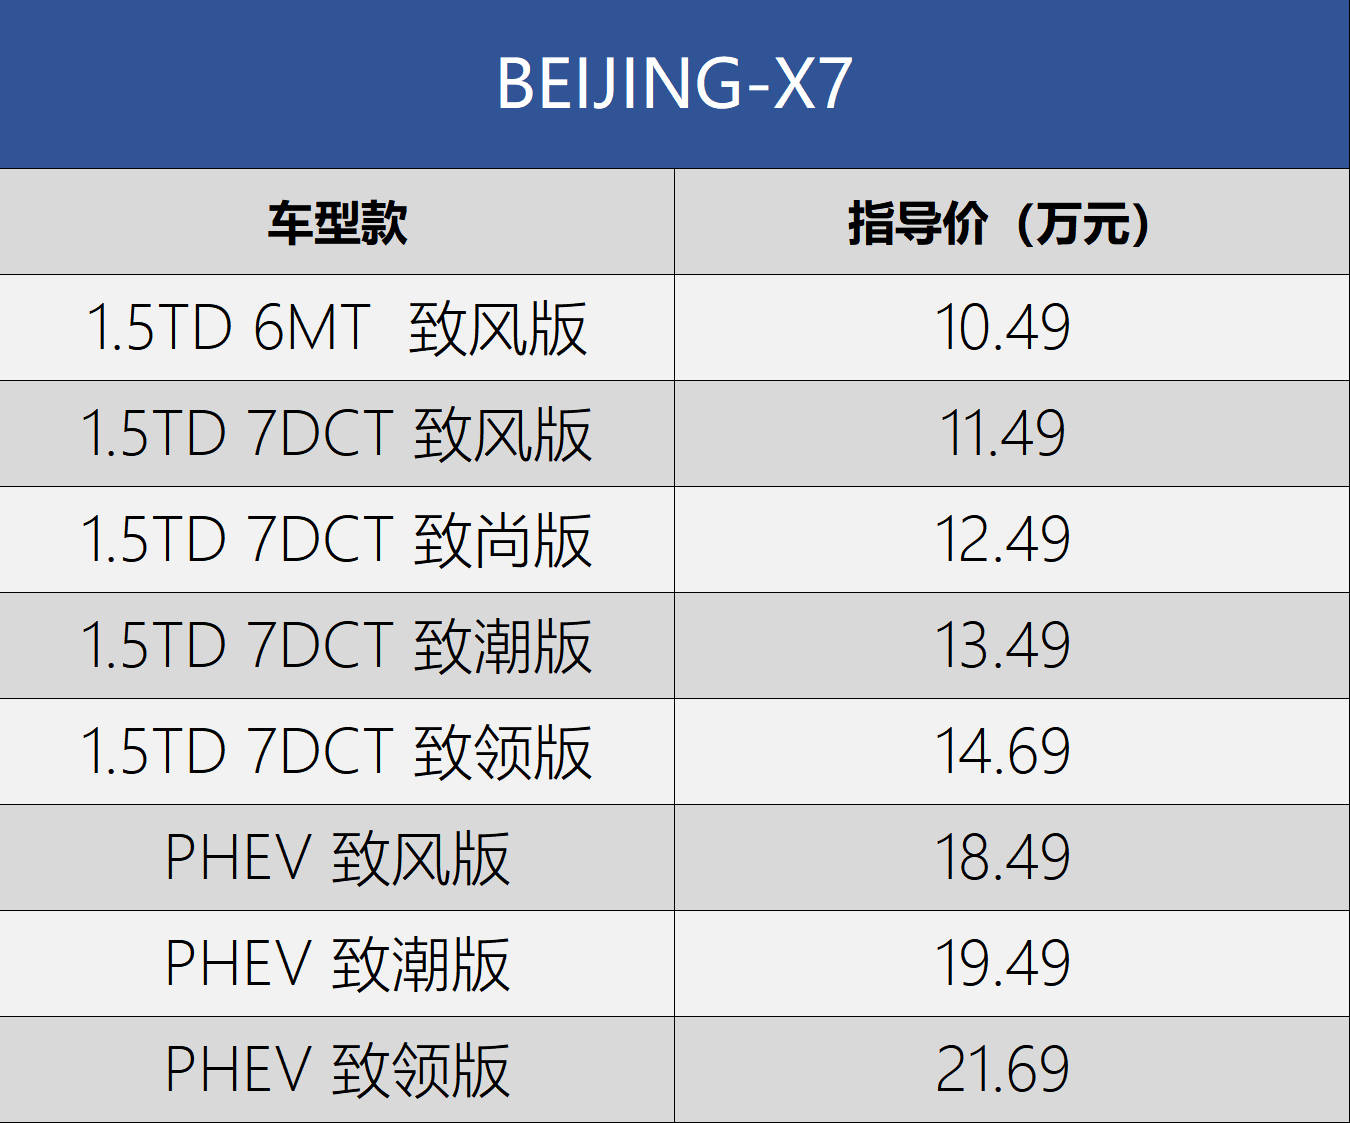 49-21.69万元 北京汽车beijing-x7正式上市